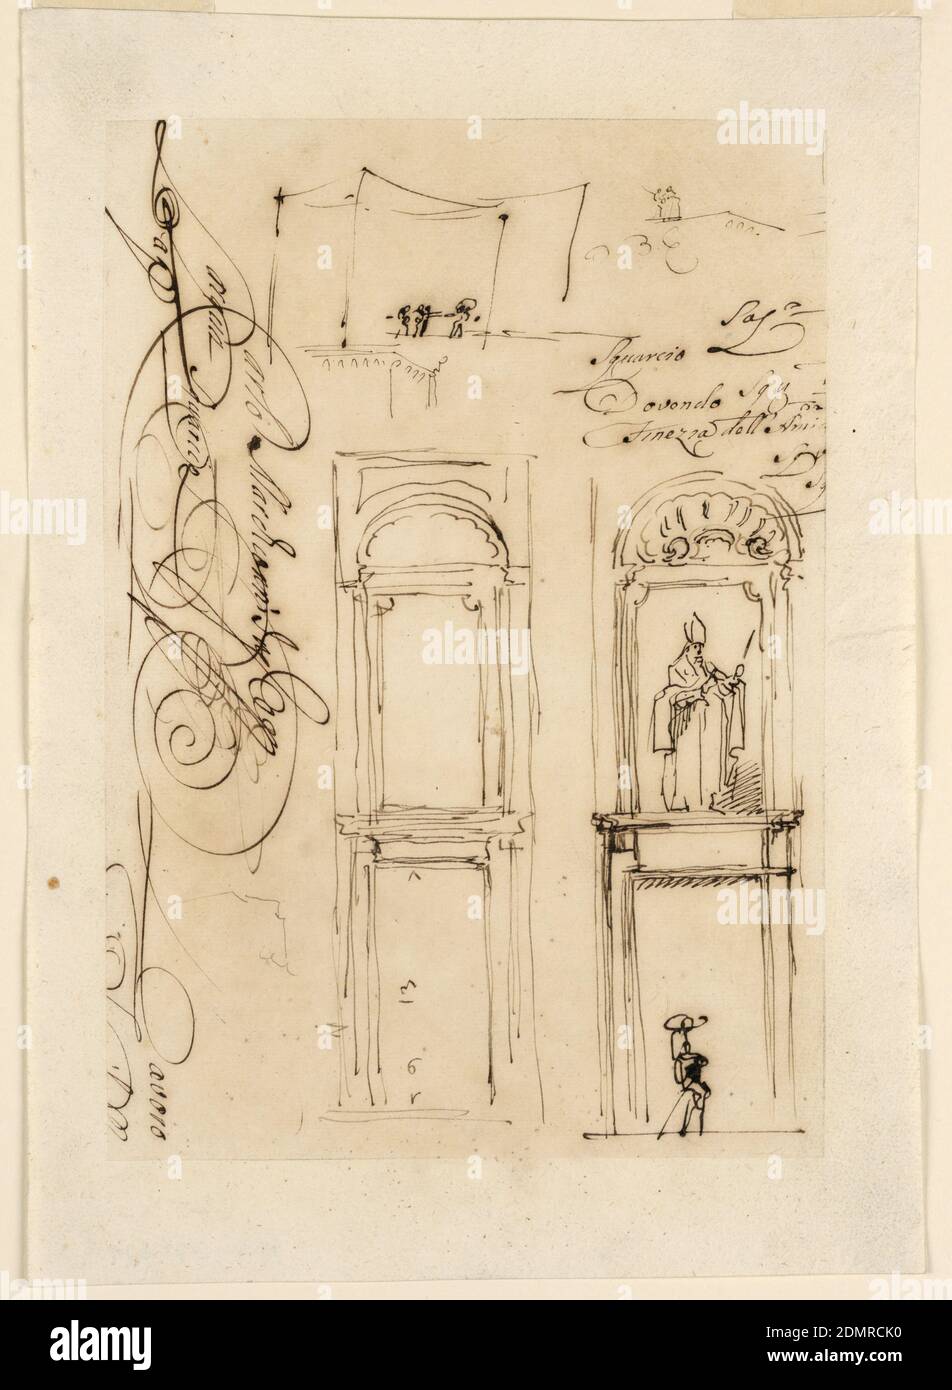 Croquis et scénario, Carlo Marchionni, italien, 1702–1786, stylo et encre noire sur papier peint, deux croquis d'une porte avec une niche à l'étage supérieur. Ce dernier est encadré par un rectangle et possède une coque au-dessus. Un croquis donne les mesures pour la porte, l'autre montre la statue d'un évêque avec une hôte sur le côté et un homme avec une jambe en bois portant un grand chapeau debout sur la rue. Ci-dessus, deux petites esquisses de personnes debout. Écrit à côté dans le script: “Lavoro”; “Squario eti”; et “Finezza dell' Amio”., Rome, Italie, 1765, architecture, dessin Banque D'Images